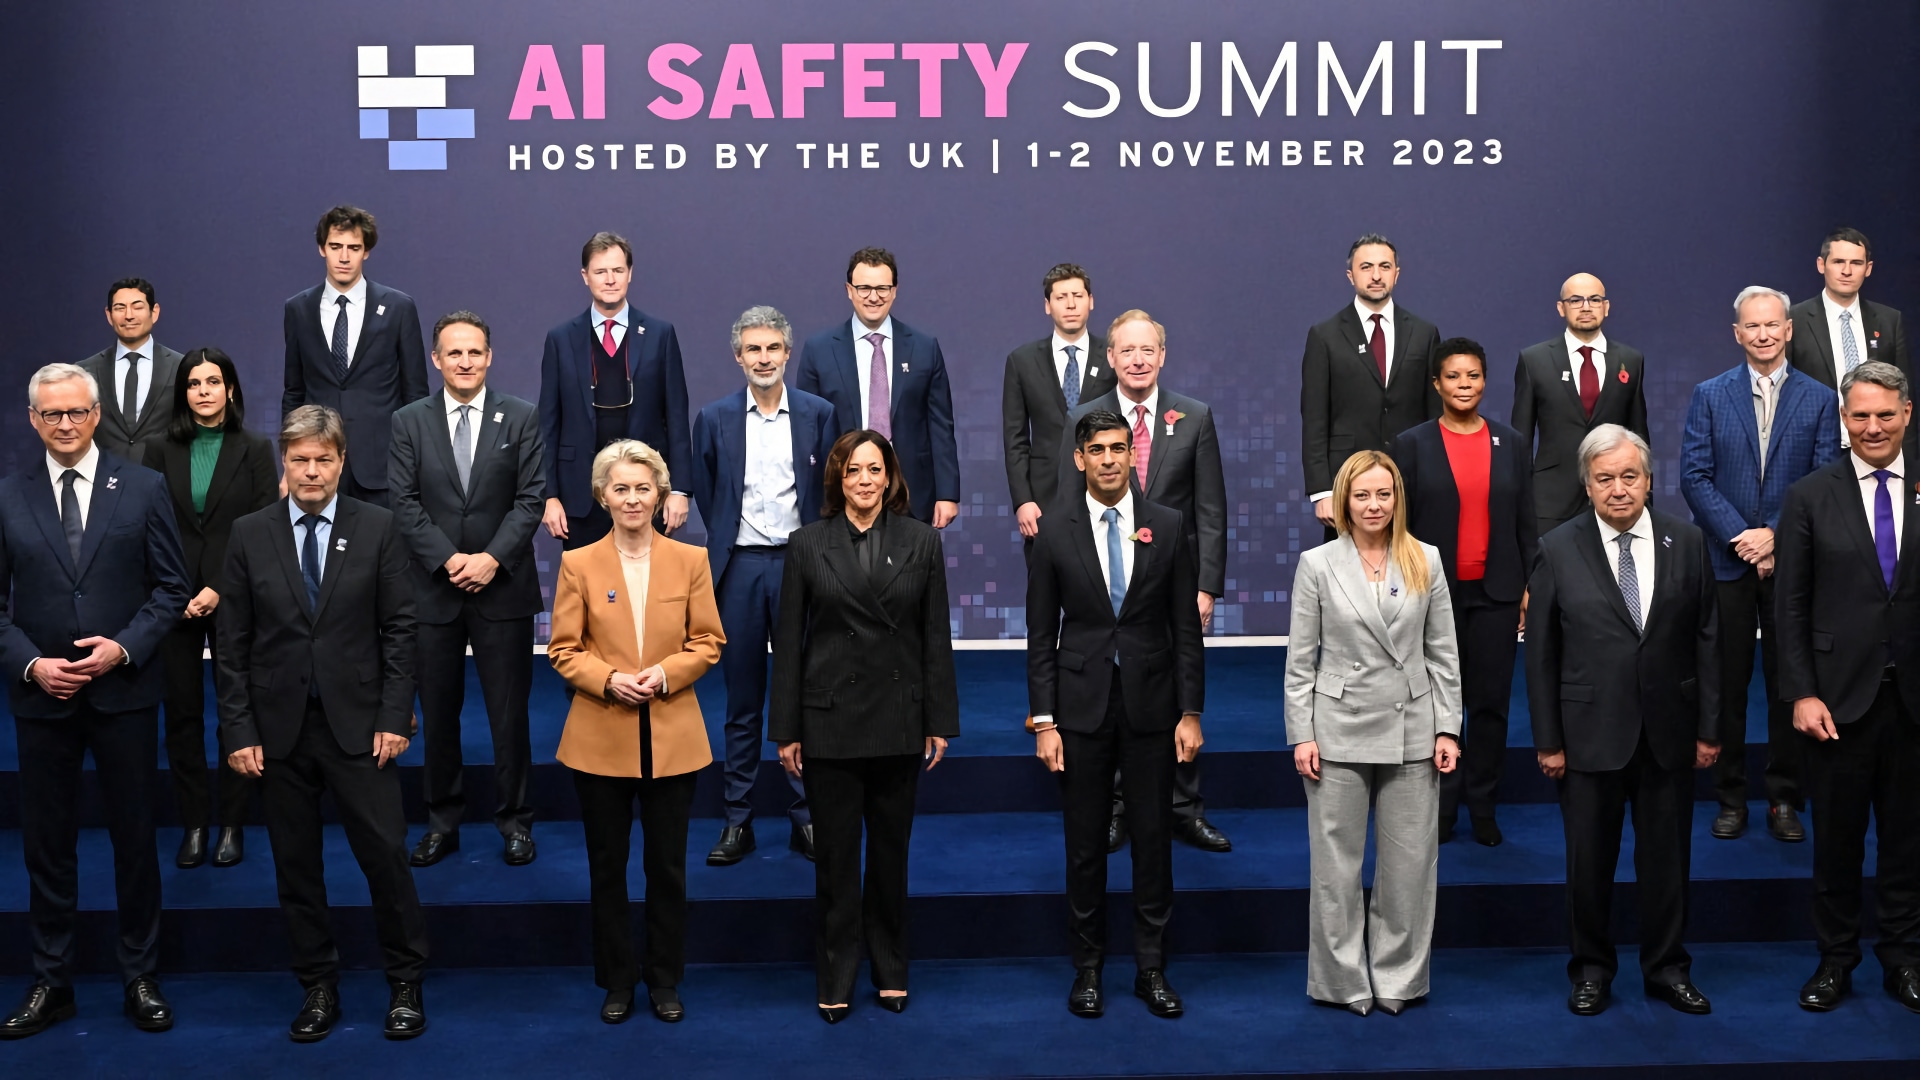 Sicurezza dell'AI: i leader mondiali riuniti al Summit 2023 sulla sicurezza dell'Intelligenza Artificiale a Bletchley Park in Gran Bretagna